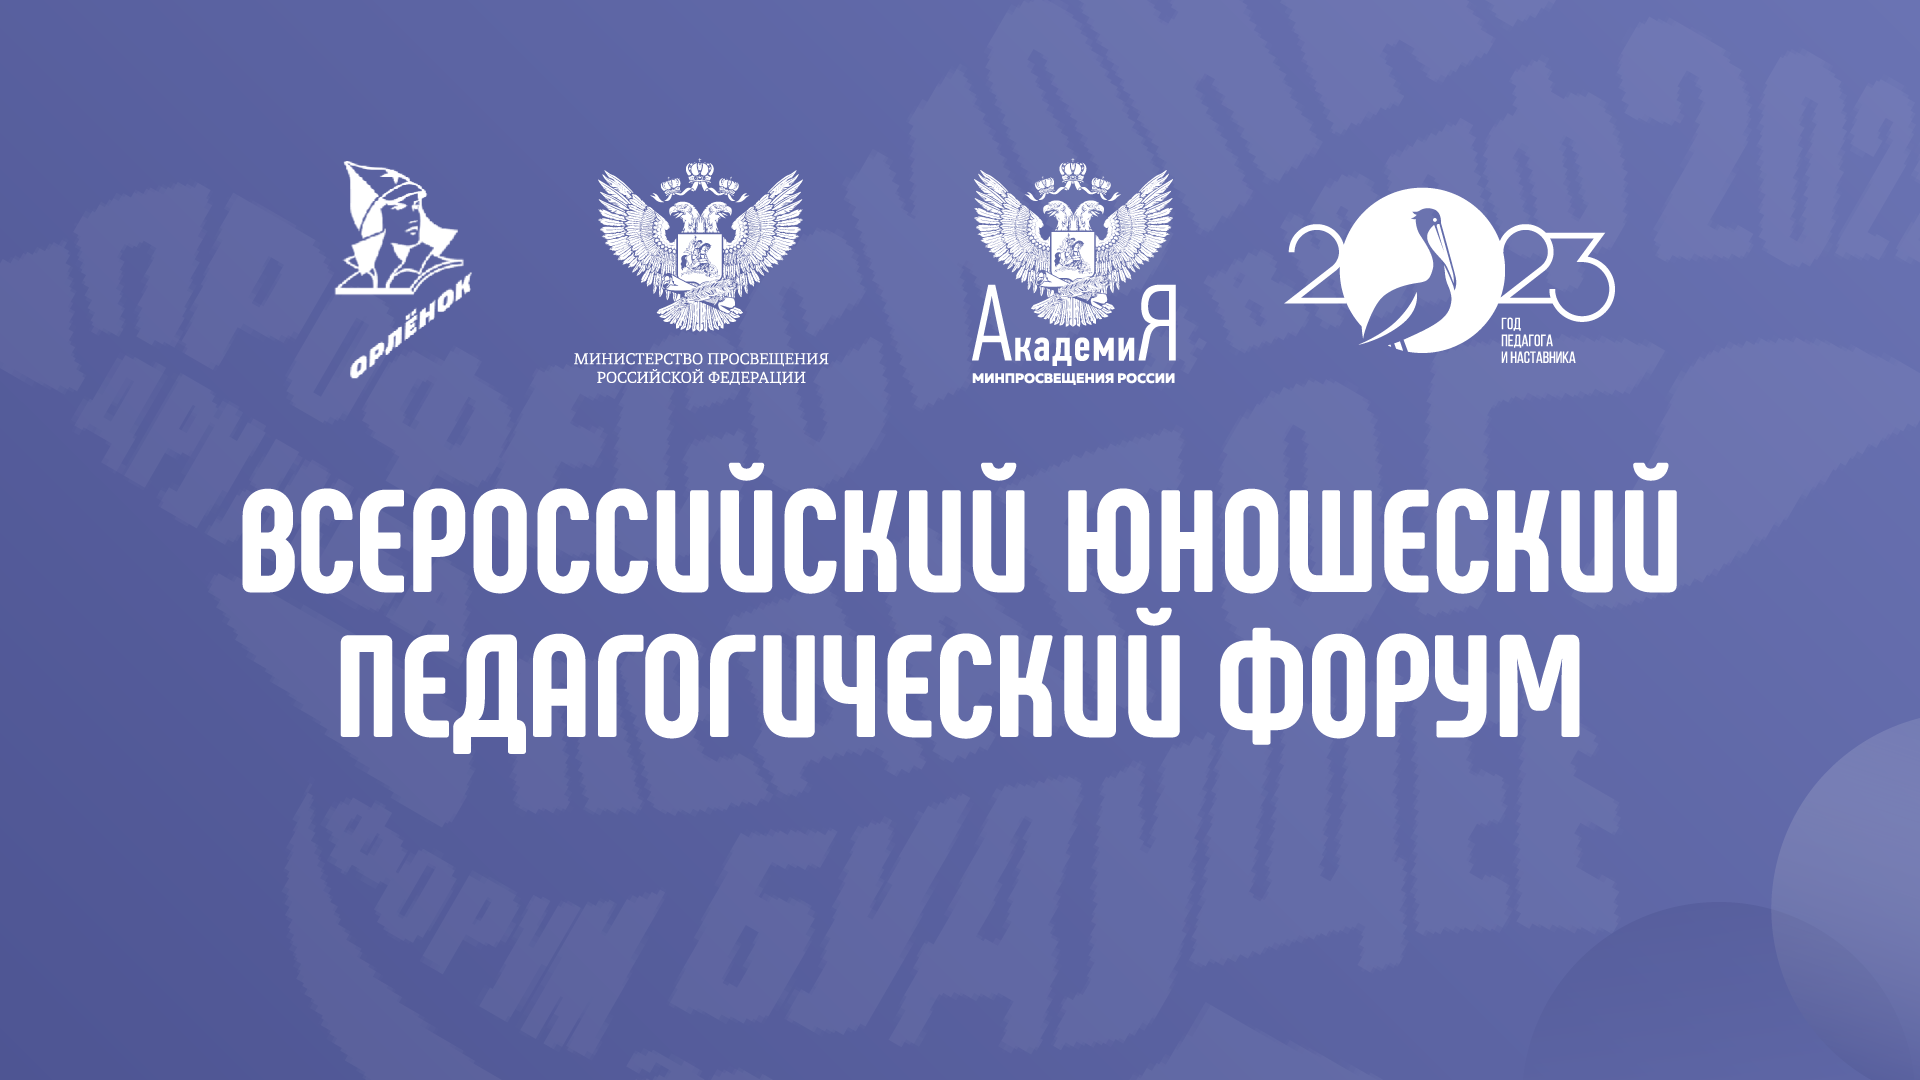 Продлен срок приема конкурсных заявок на получение путевки на Всероссийский юношеский педагогический форум